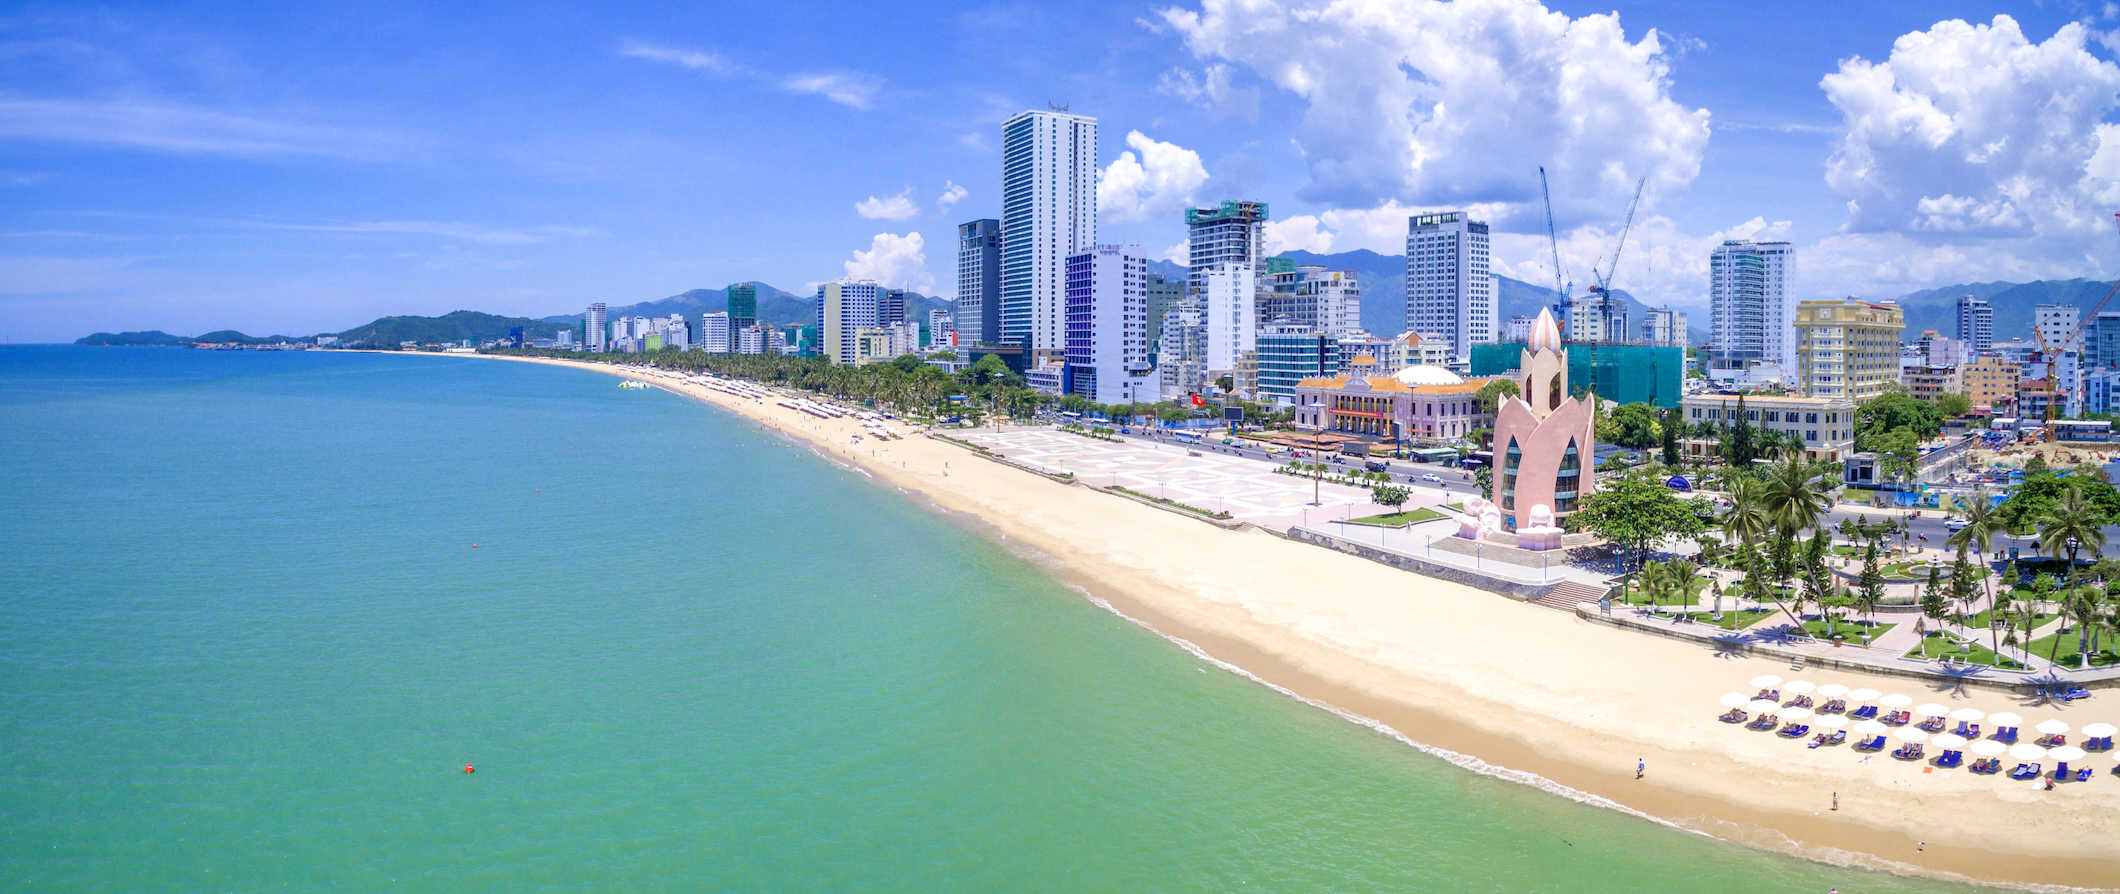 Cena da praia ao longo da costa de Nhazhang, Vietnã, com um horizonte da cidade se elevando ao longo da costa